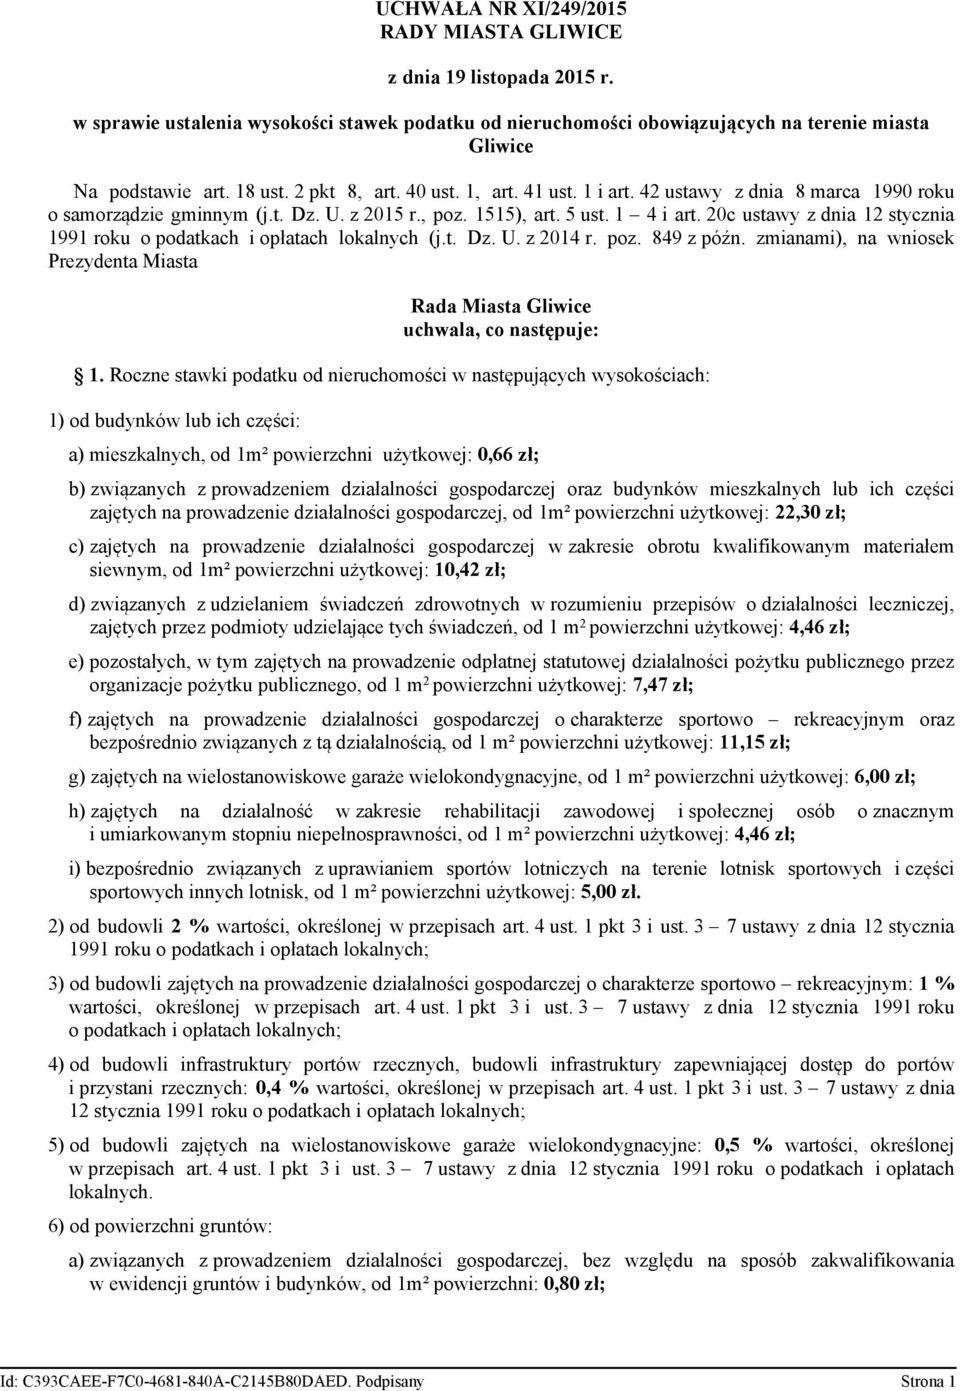 20c ustawy z dnia 12 stycznia 1991 roku o podatkach i opłatach lokalnych (j.t. Dz. U. z 2014 r. poz. 849 z późn. zmianami), na wniosek Prezydenta Miasta Rada Miasta Gliwice uchwala, co następuje: 1.